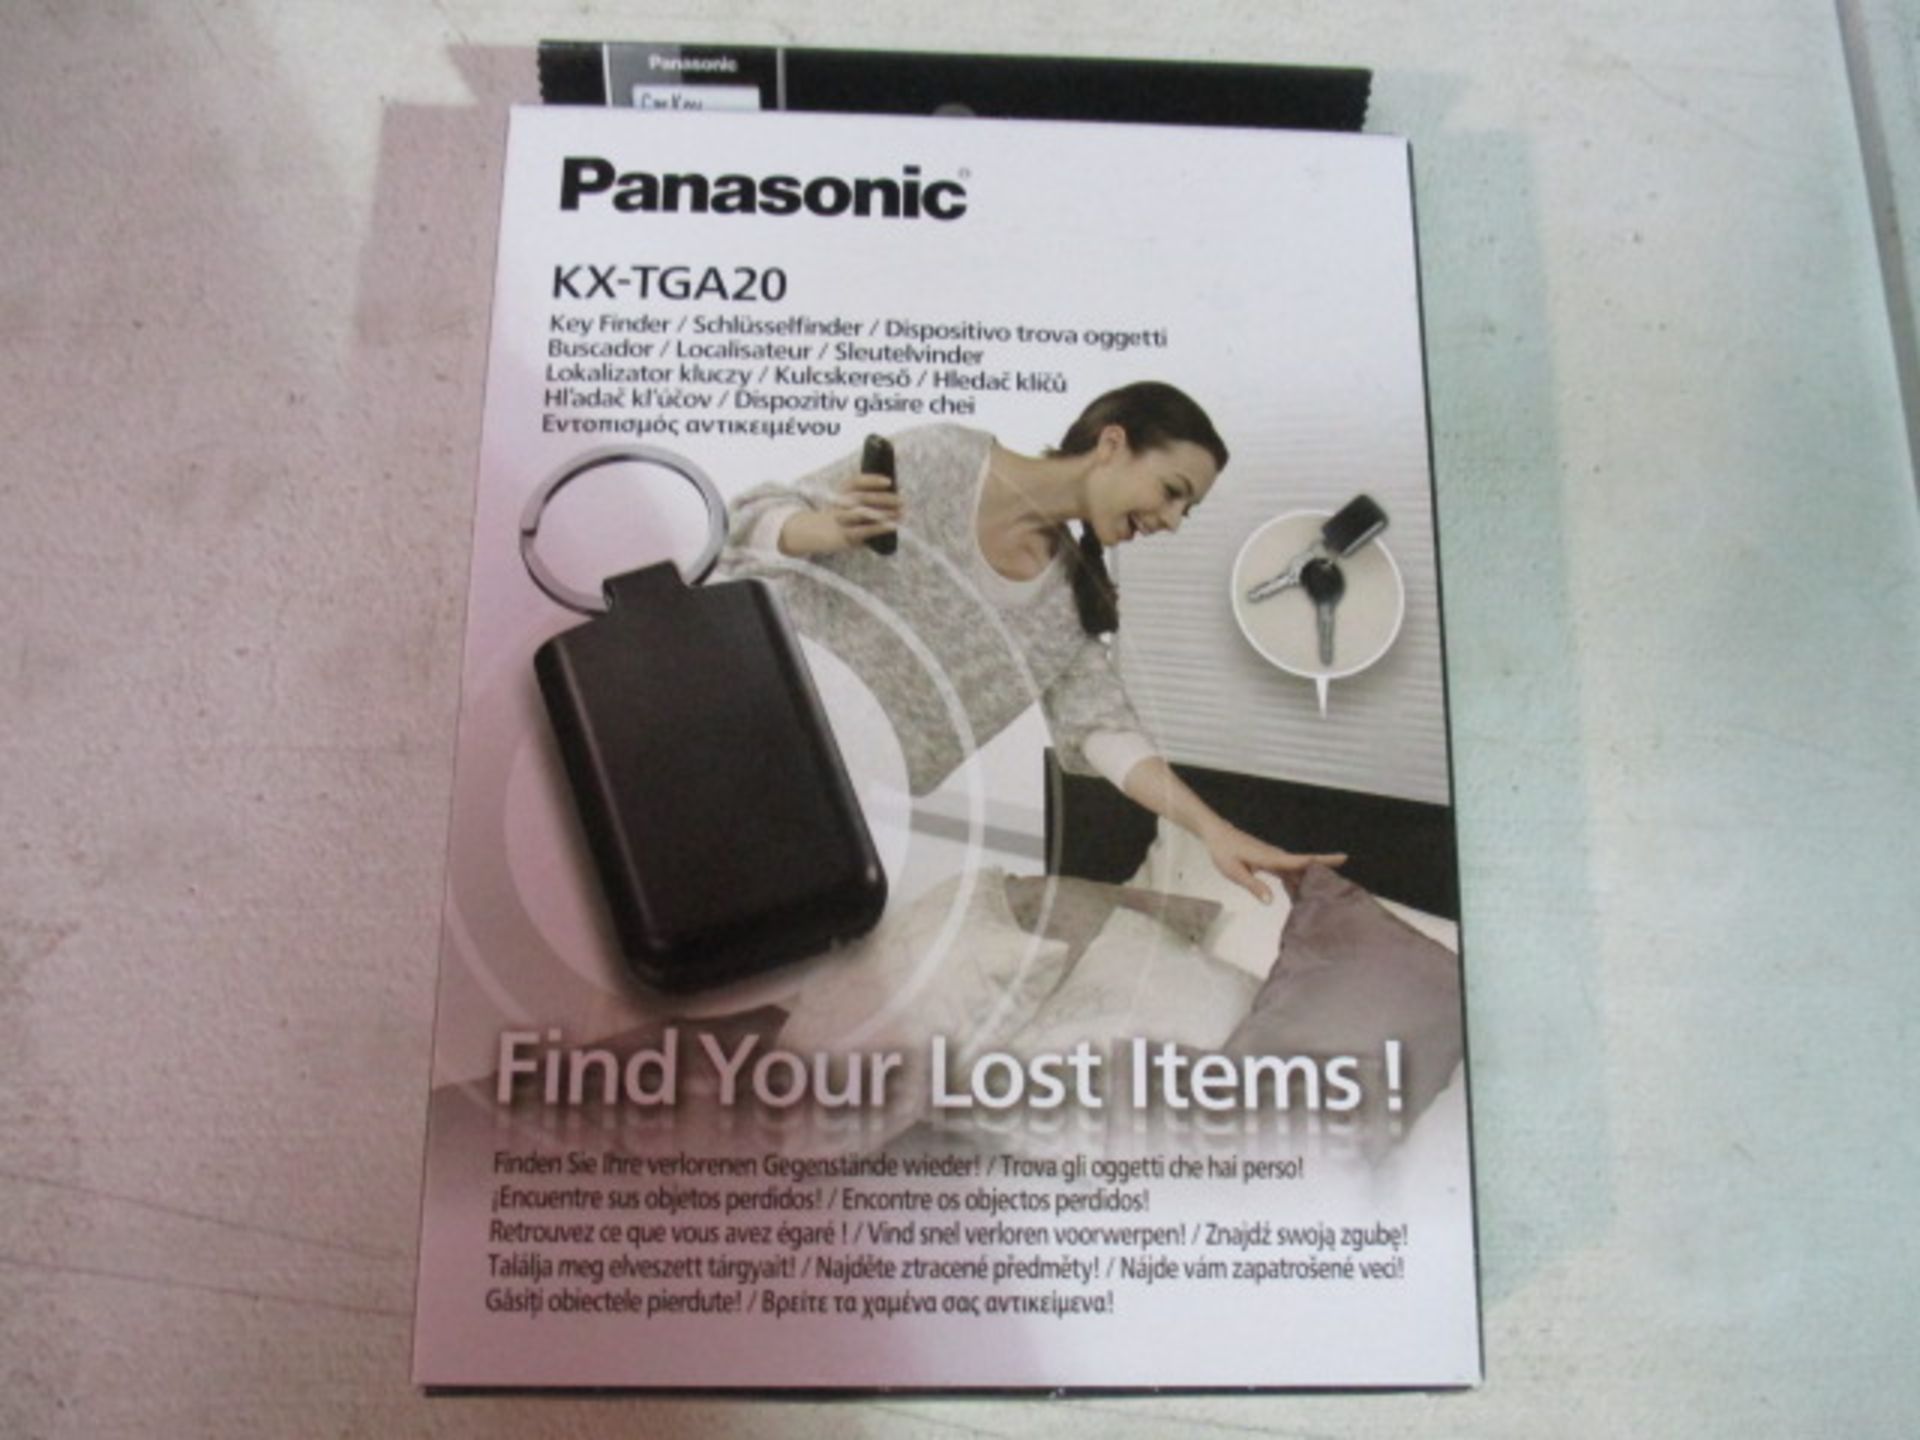 Panasonic Key Finder Boxed and sealed